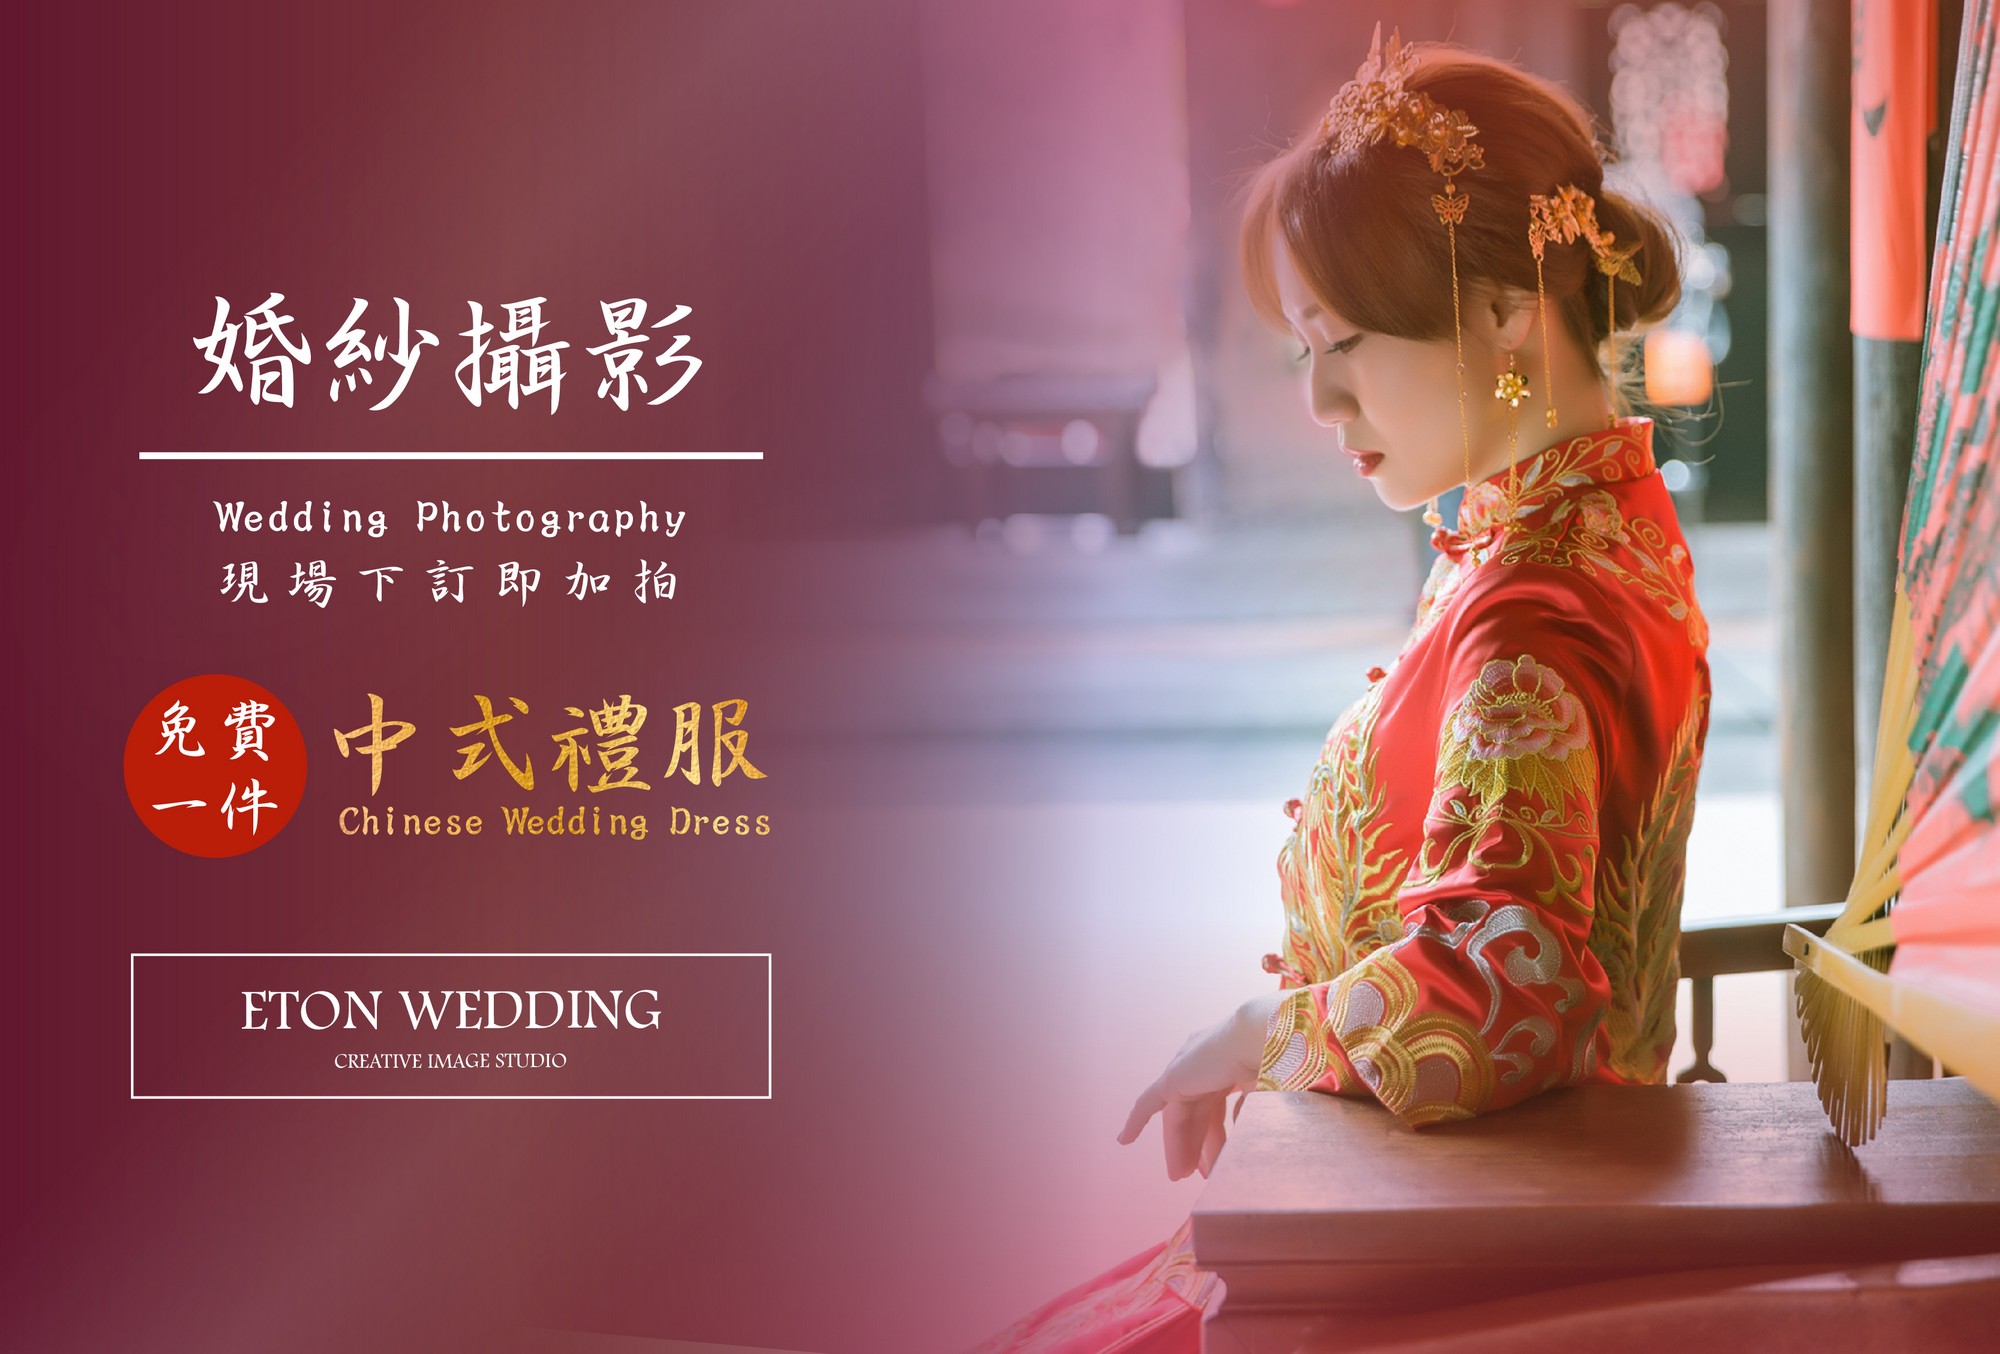 中式婚紗,拍中式婚紗,拍中國風婚紗,婚禮攝影,婚攝,婚禮記錄,婚禮錄影